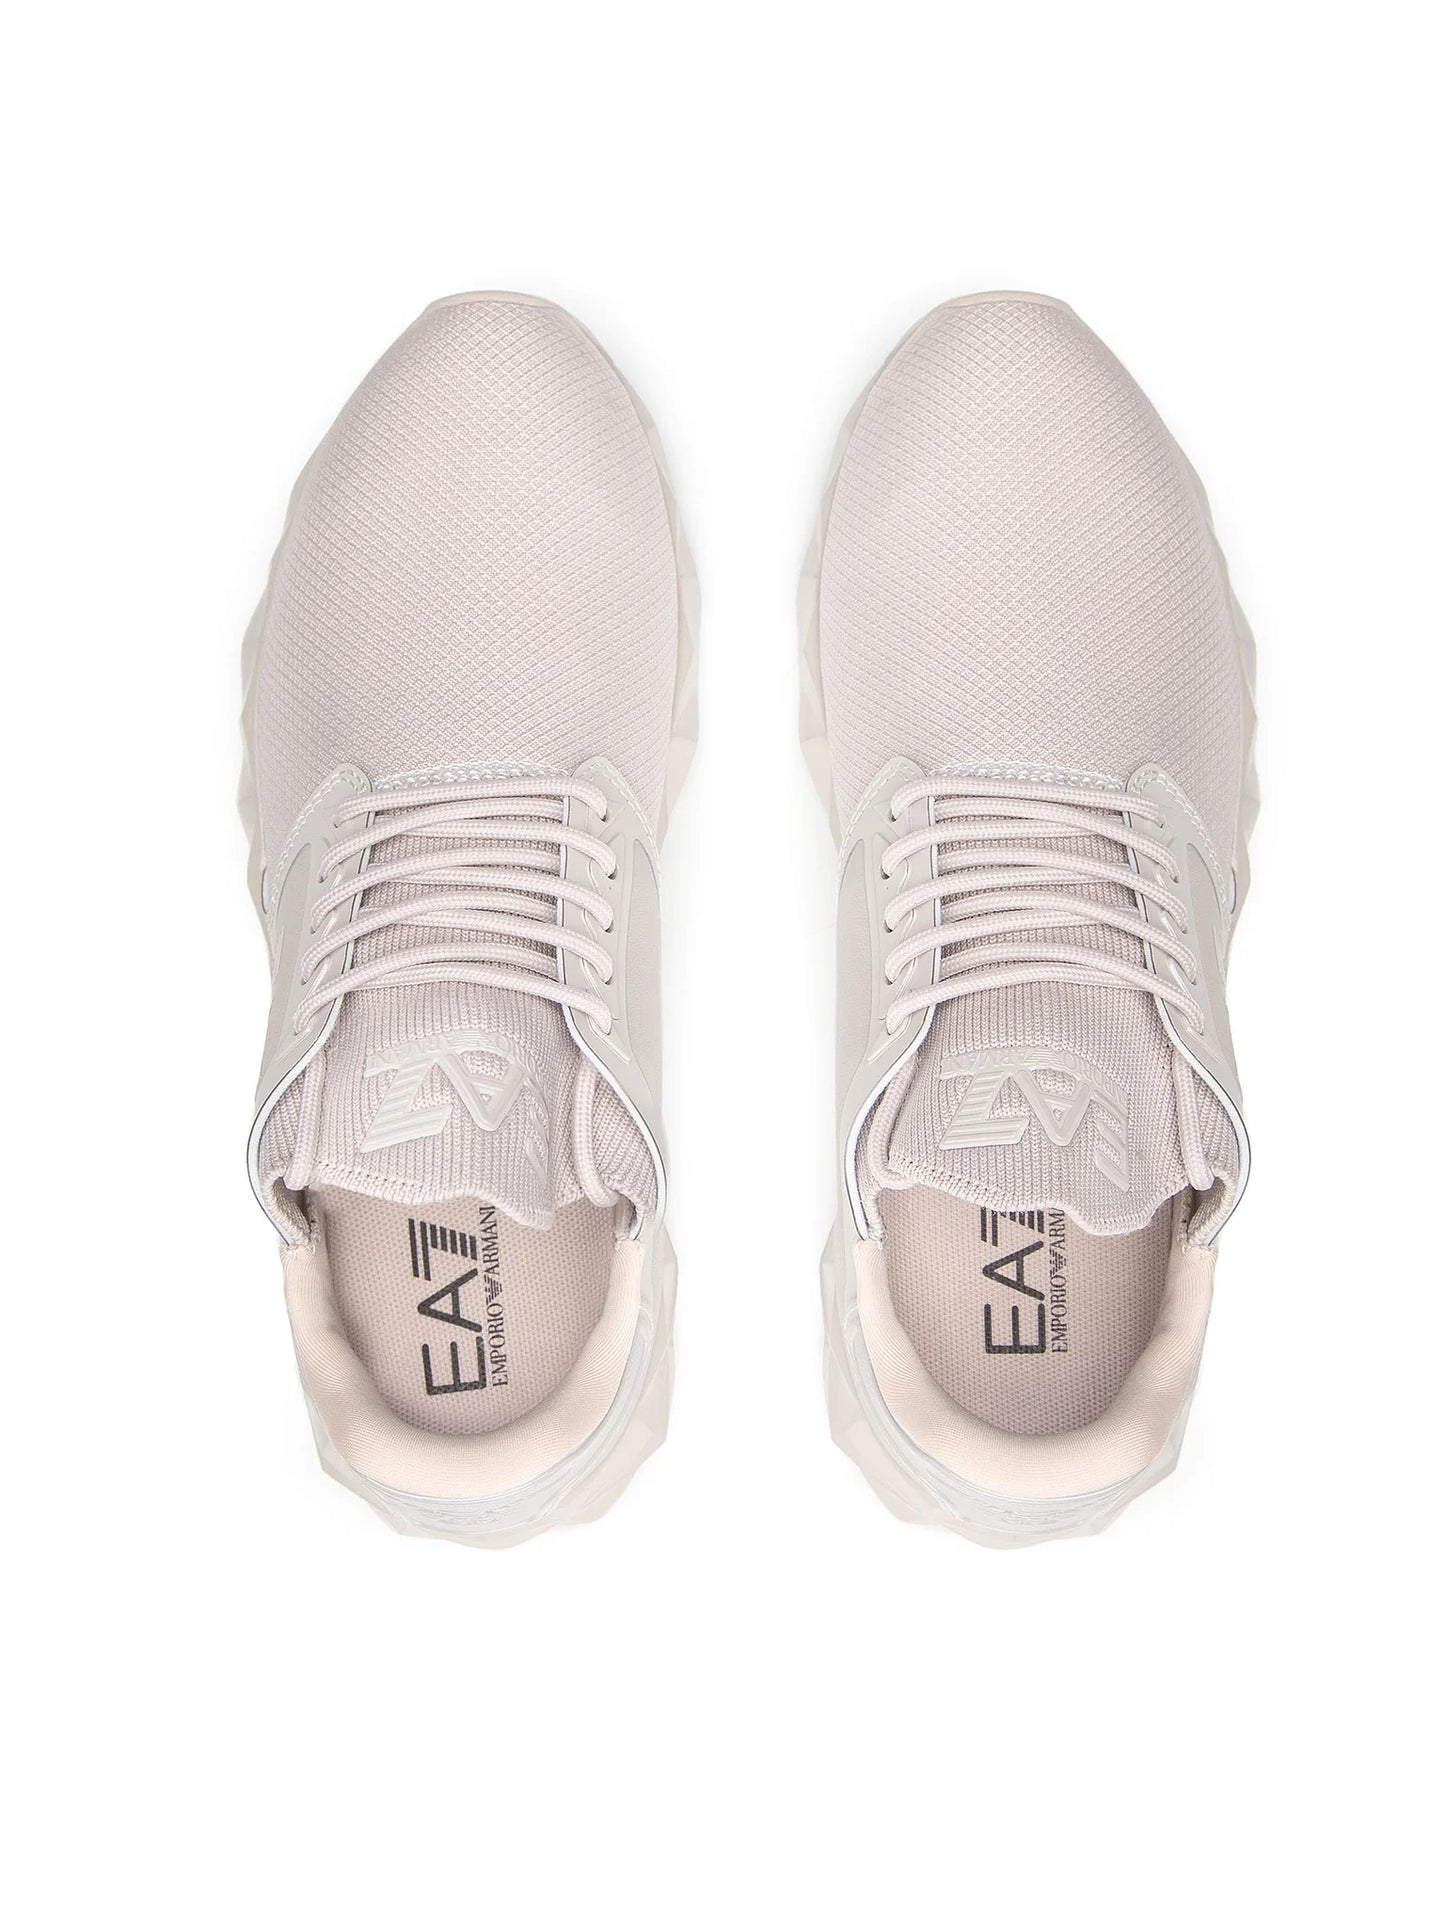 EA7 EMPORIO ARMANI Sneakers - Bej